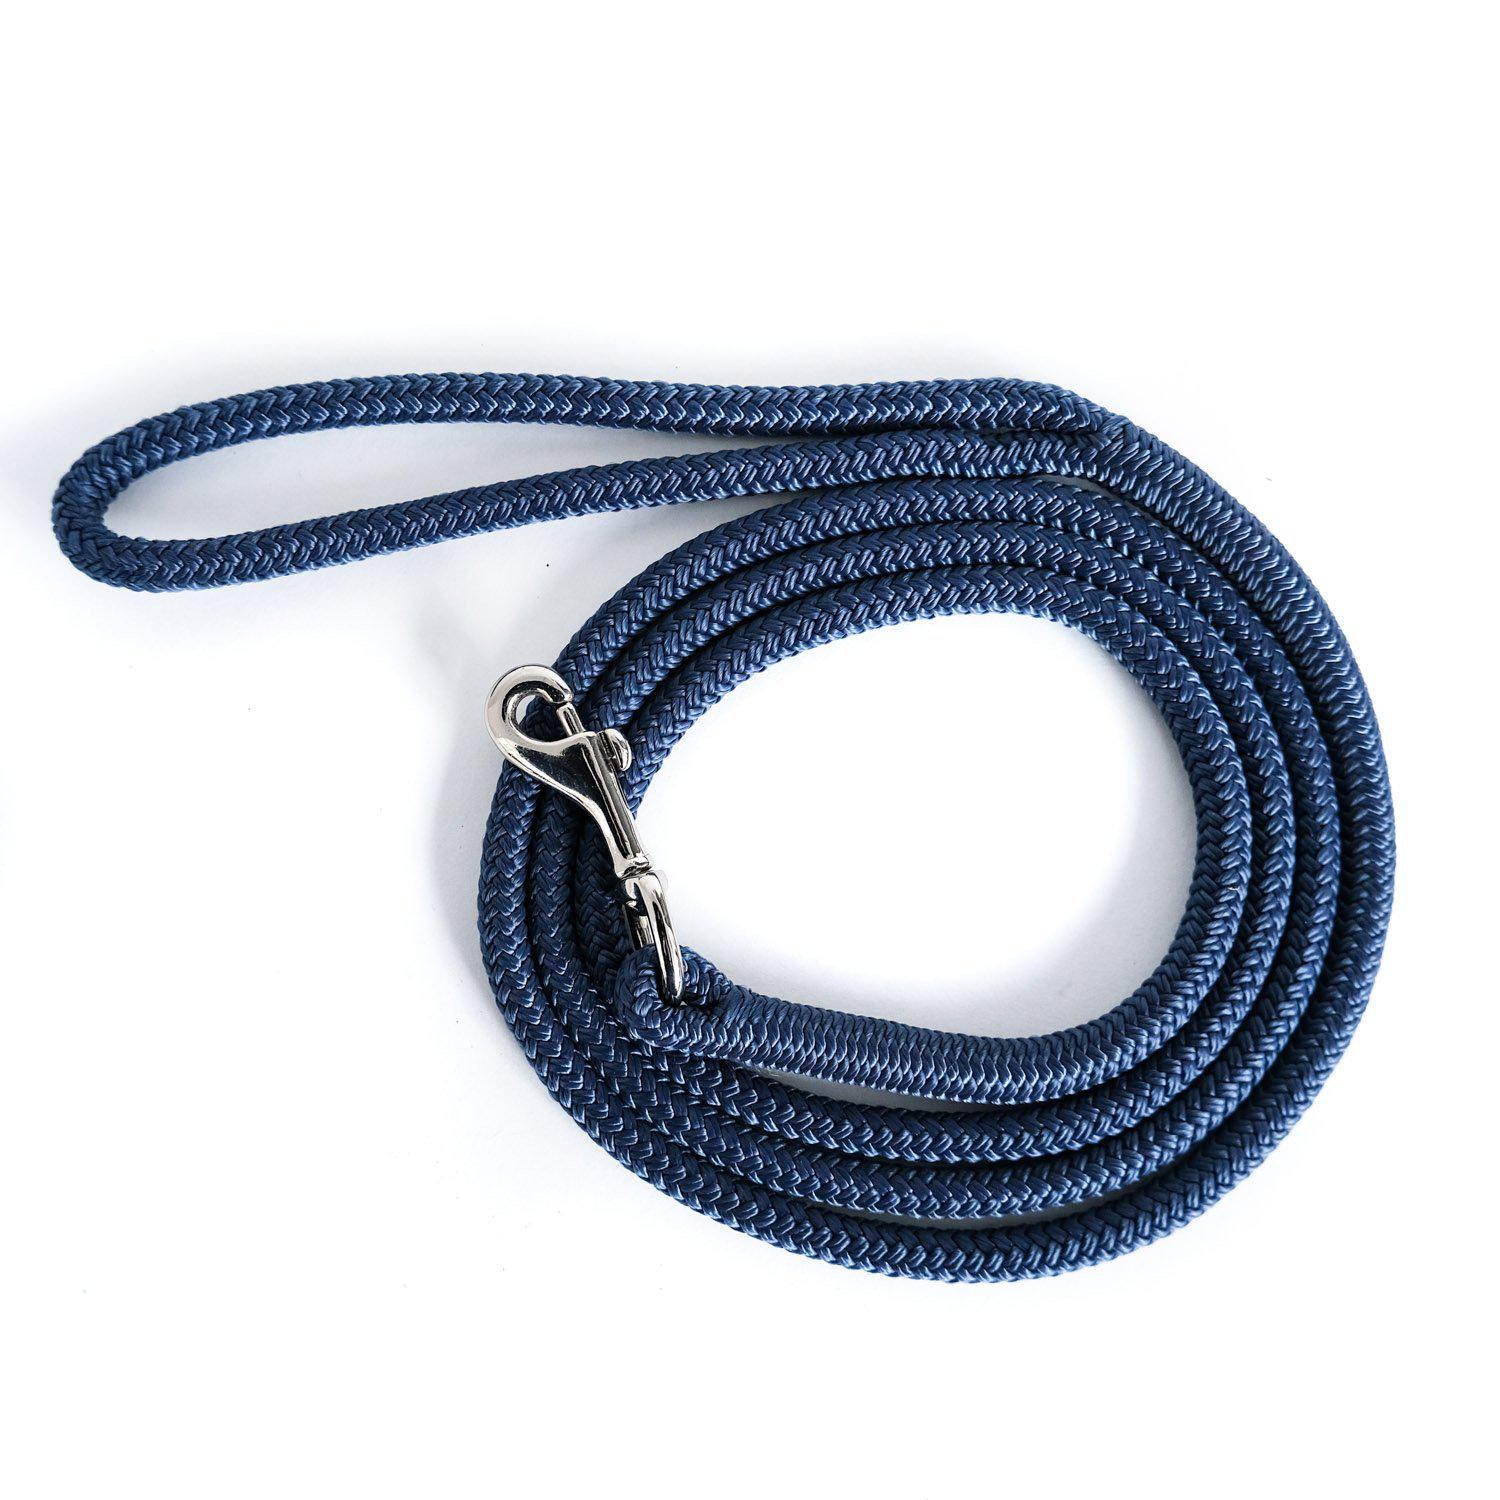 https://wanderdogdesigns.com/cdn/shop/products/Thin-rope-leash-blue_WanderDog.jpg?v=1693415387&width=1946